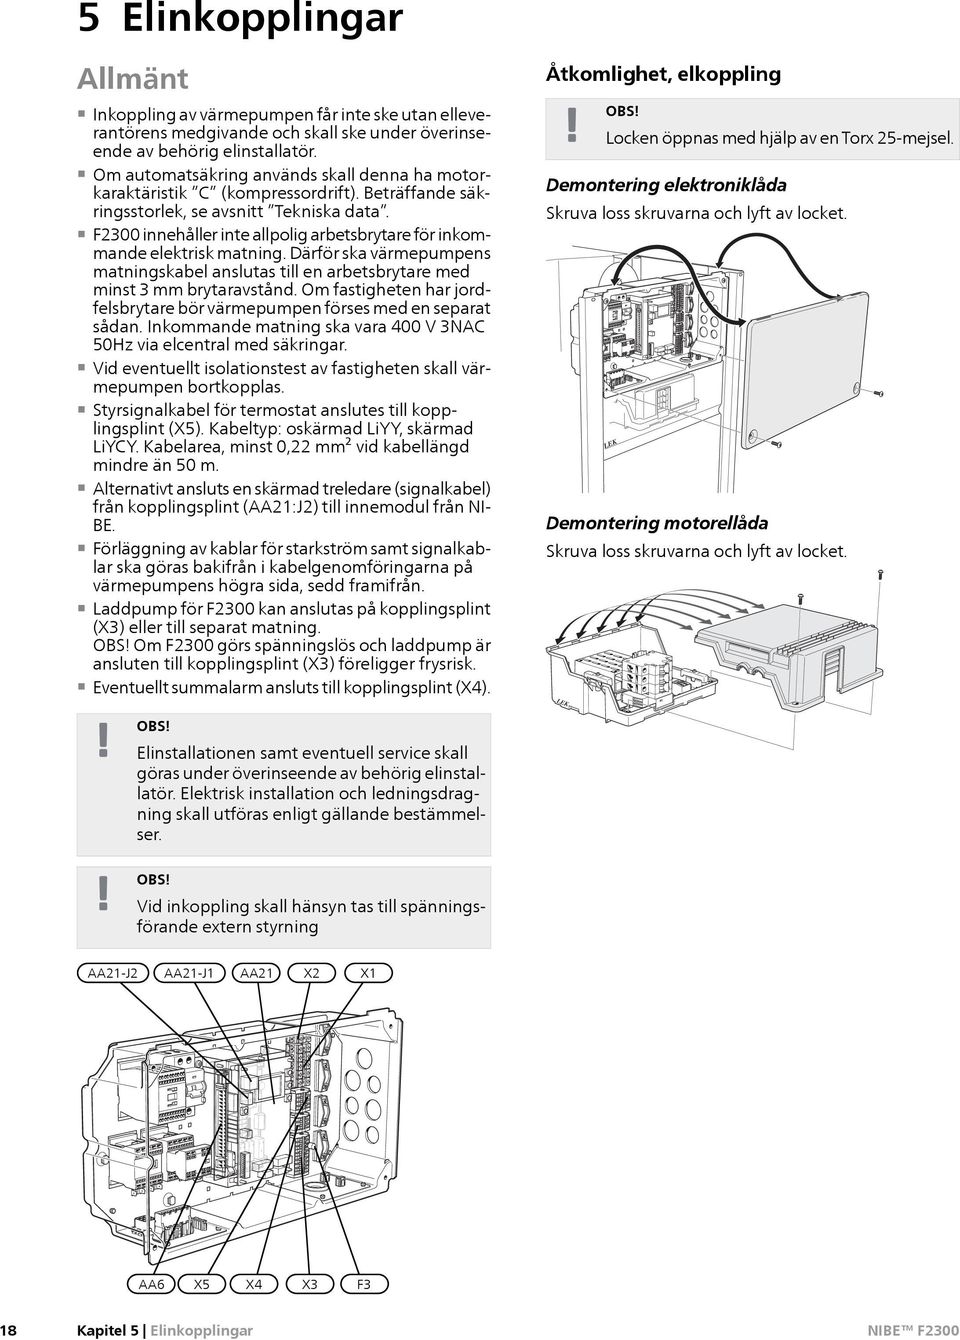 F2300 innehåller inte allpolig arbetsbrytare för inkommande elektrisk matning. Därför ska värmepumpens matningskabel anslutas till en arbetsbrytare med minst 3 mm brytaravstånd.